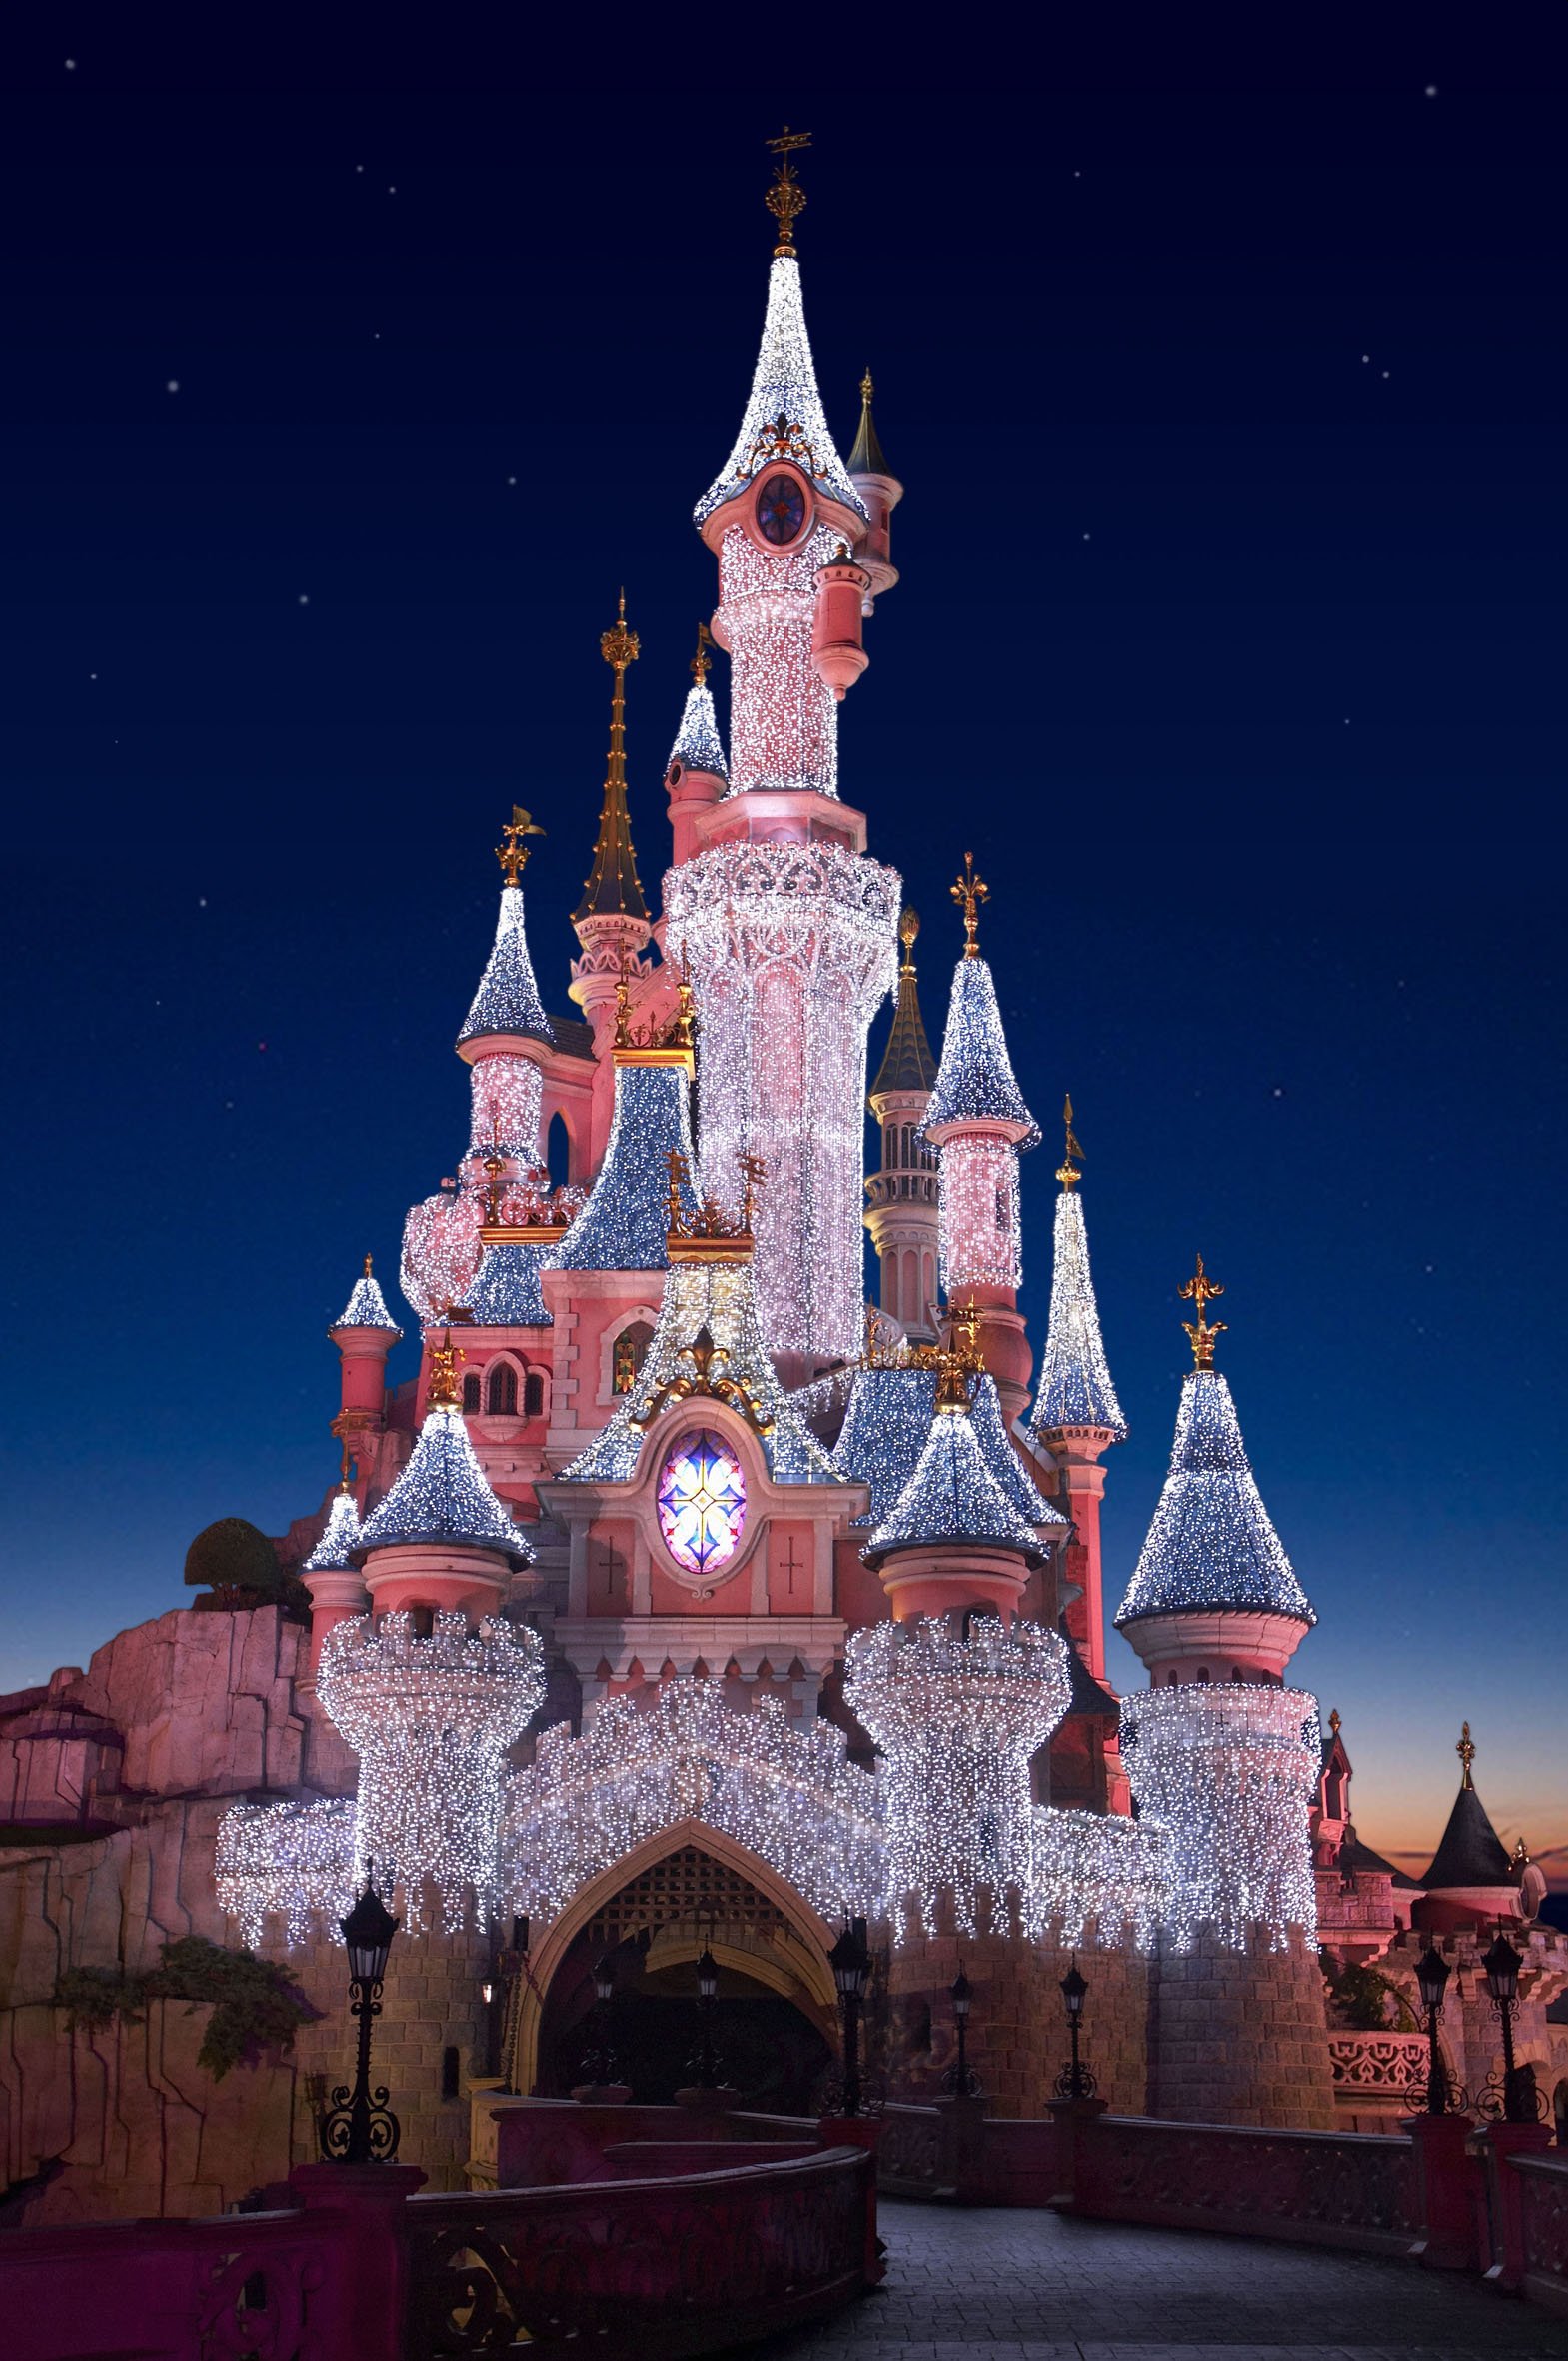 Steam Workshop::Disneyland Castle - Disneyland Paris sleeping beauty